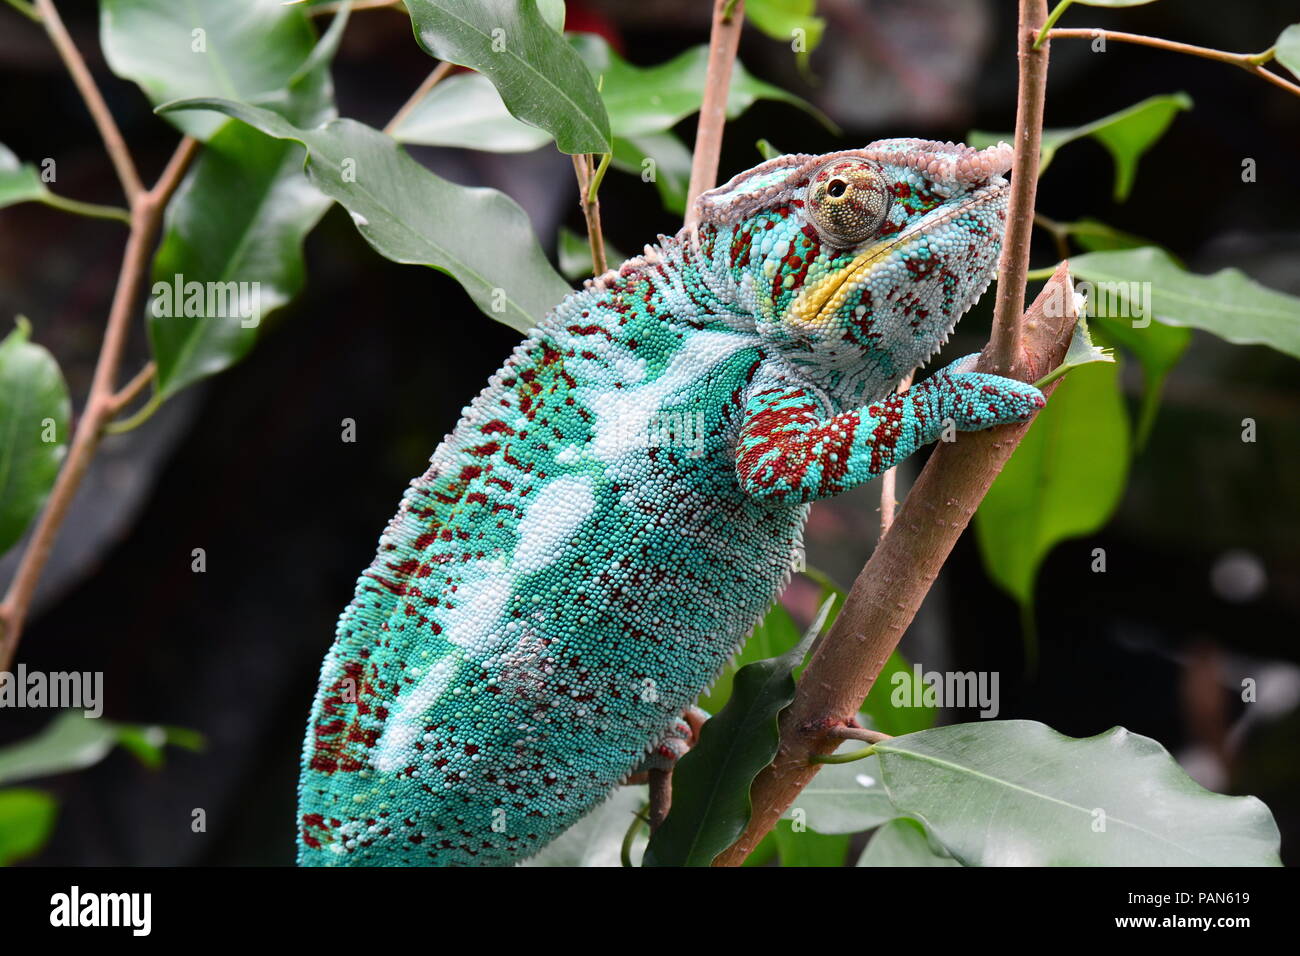 Un colorido chameleon paseos alrededor de su entorno, mostrando su belleza. Foto de stock